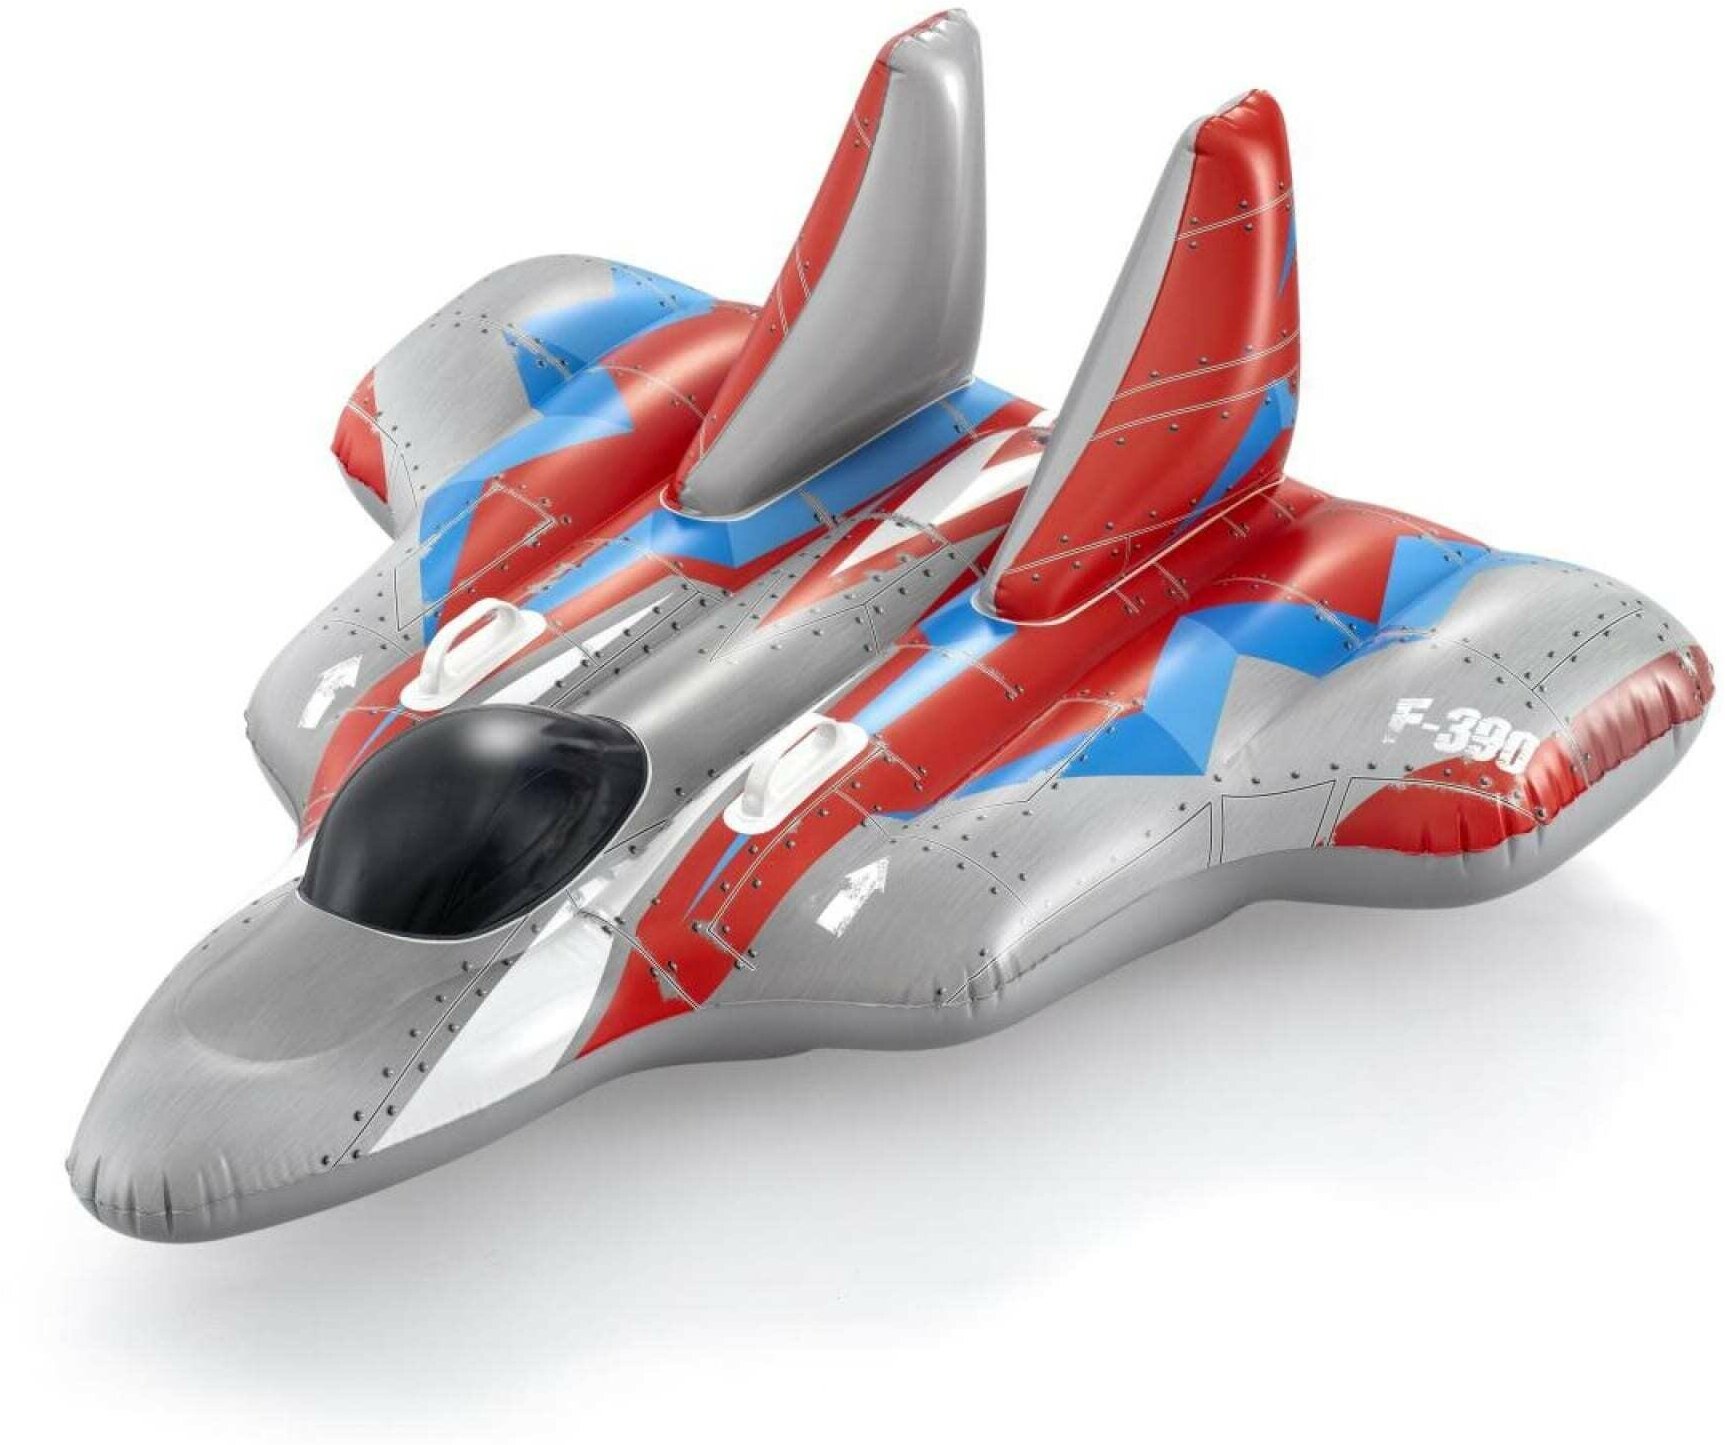 Надувная игрушка Звездолет Galaxy Glider, 136x135 см, от 3 лет, BestWay